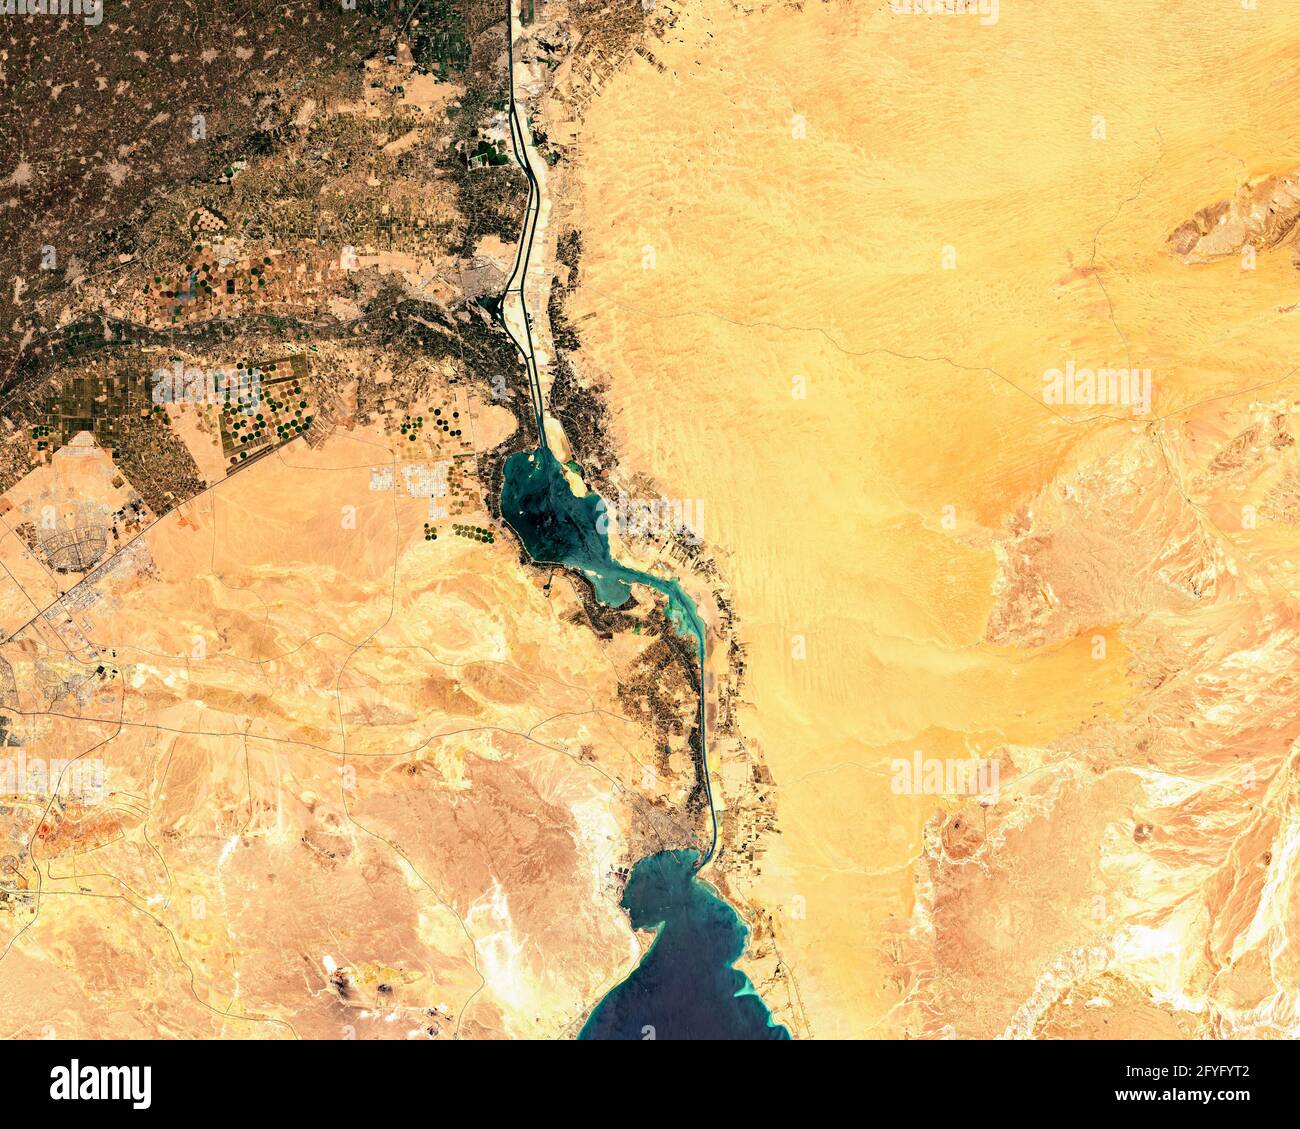 Immagine satellitare del canale di Suez in Egitto Foto Stock